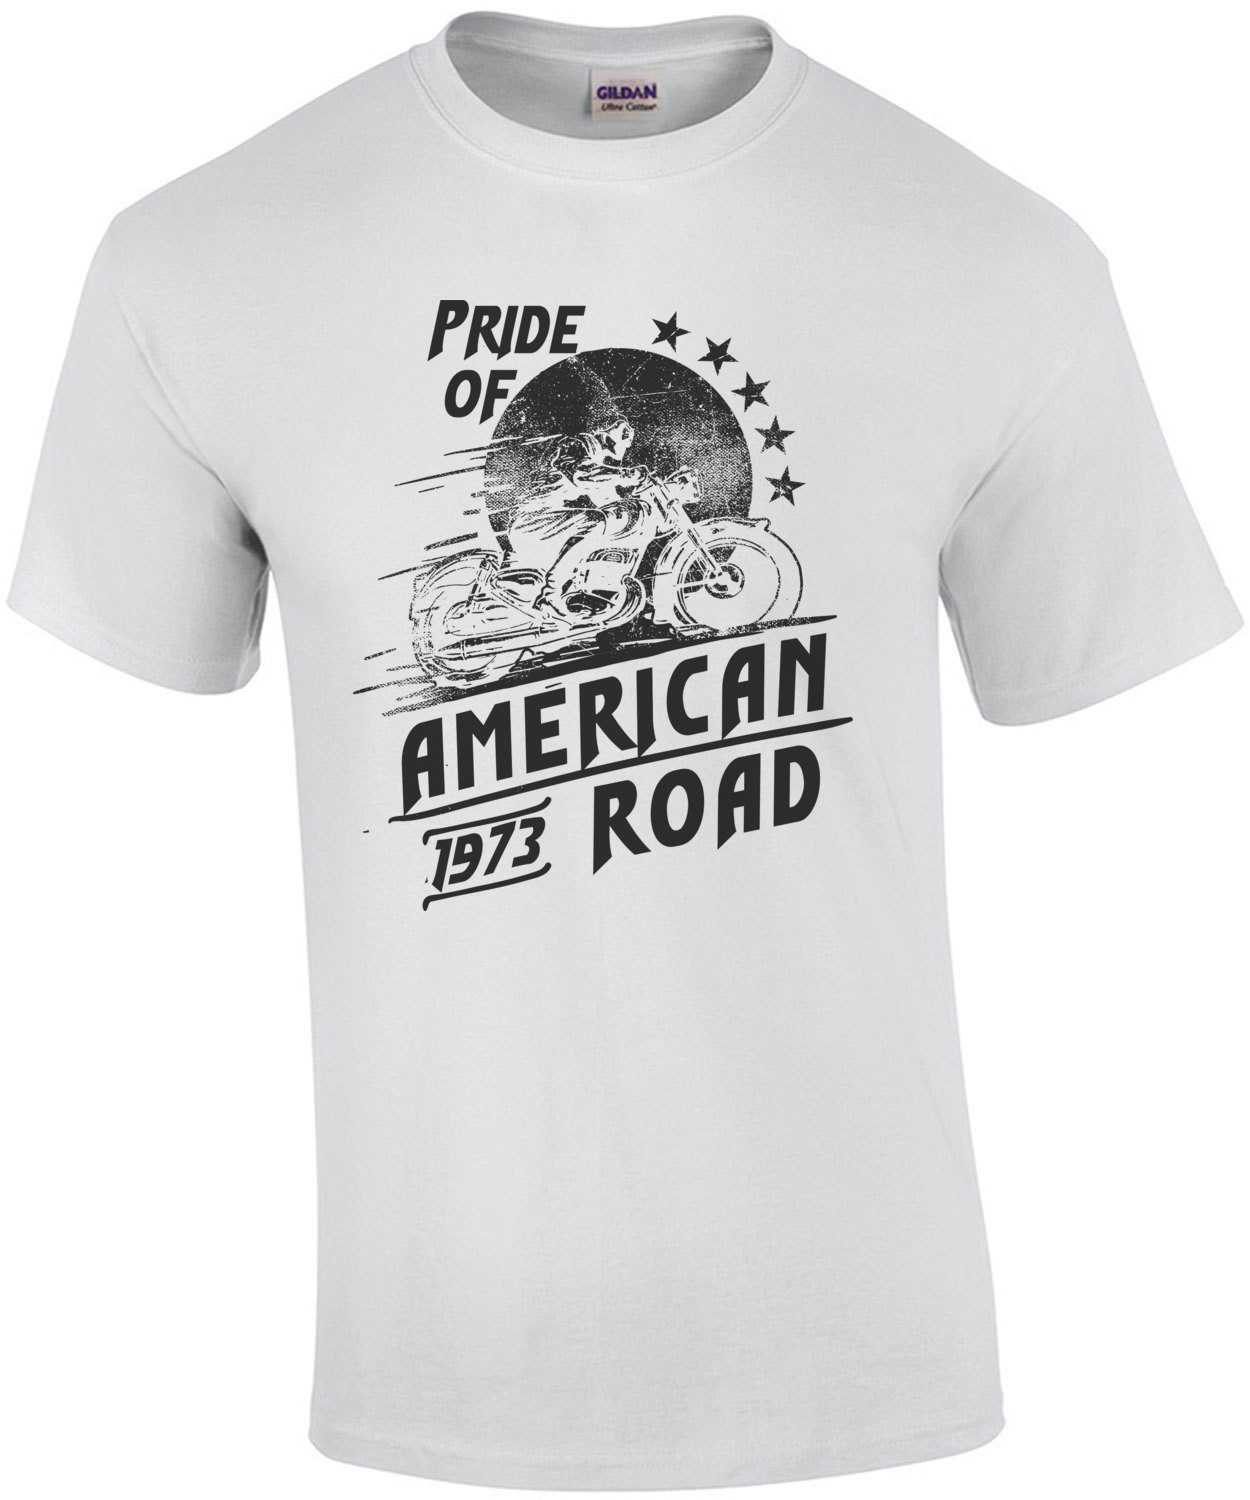 Pride Of American Road 1973 Motorcycle T-Shirt